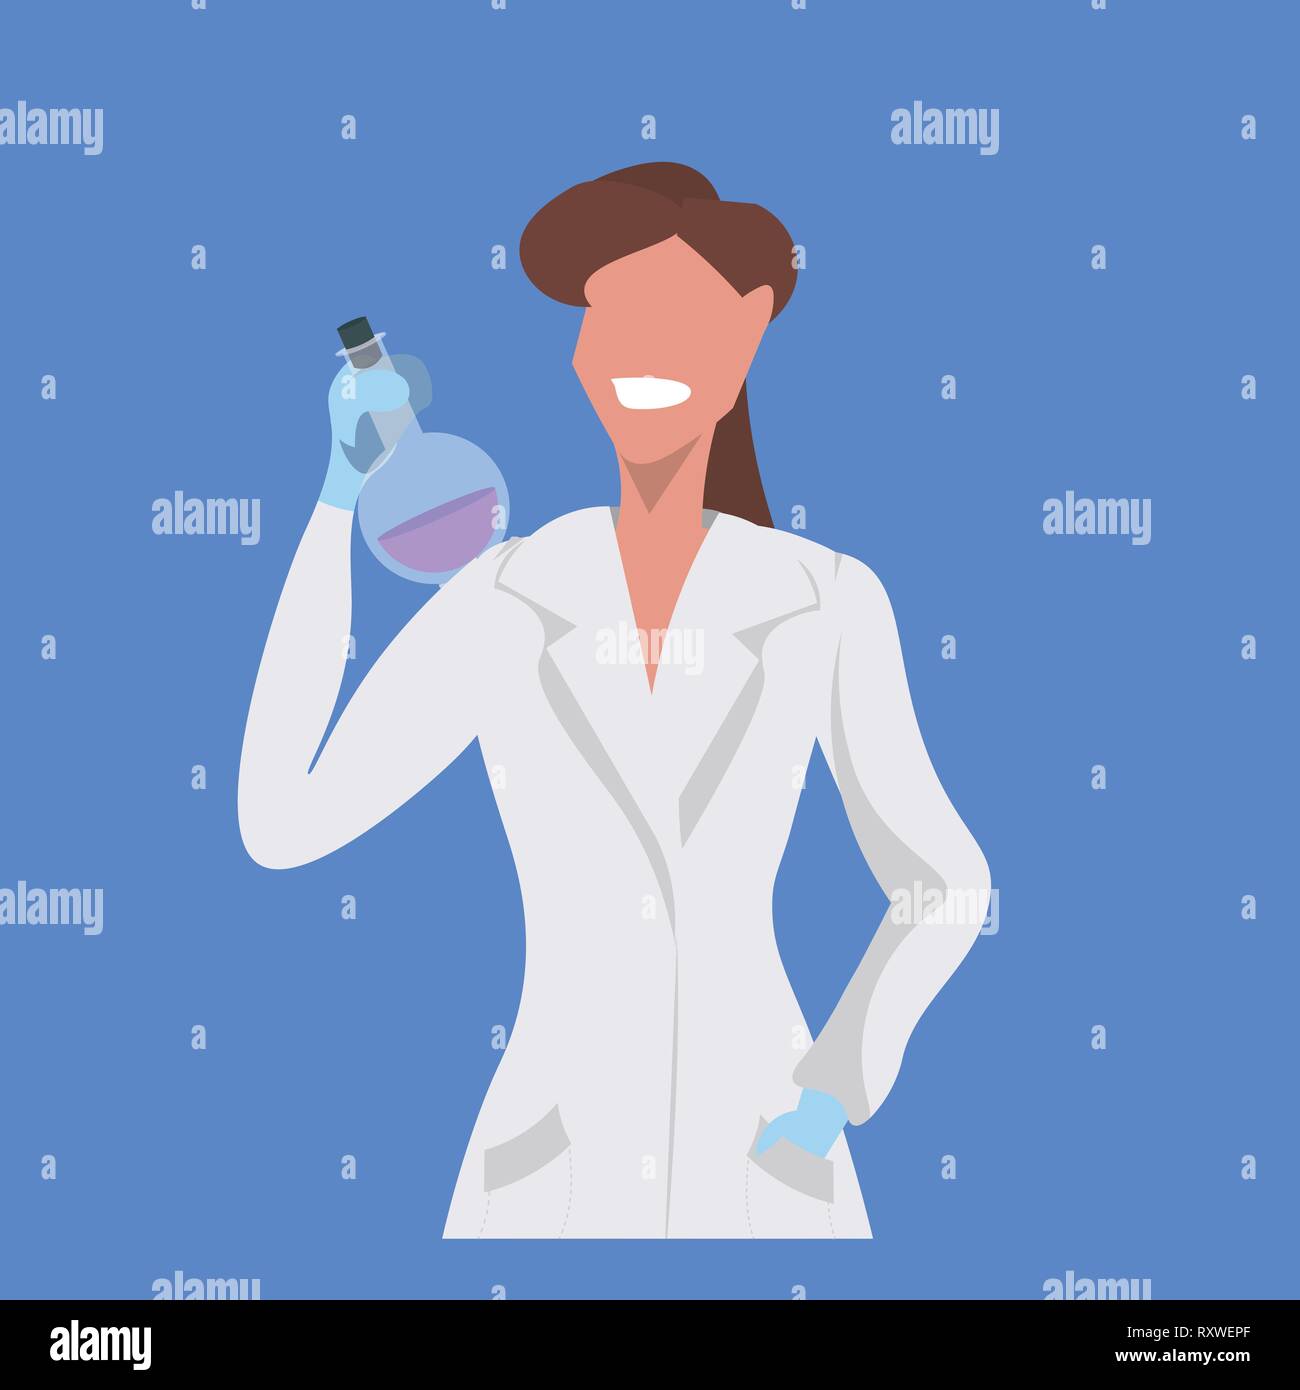 Wissenschaftlerin holding Reagenzglas Frau, Labor, Techniker, weiße Uniform medizinischer Arbeiter professionelle Besetzung Konzept blauer Hintergrund, flach Stock Vektor